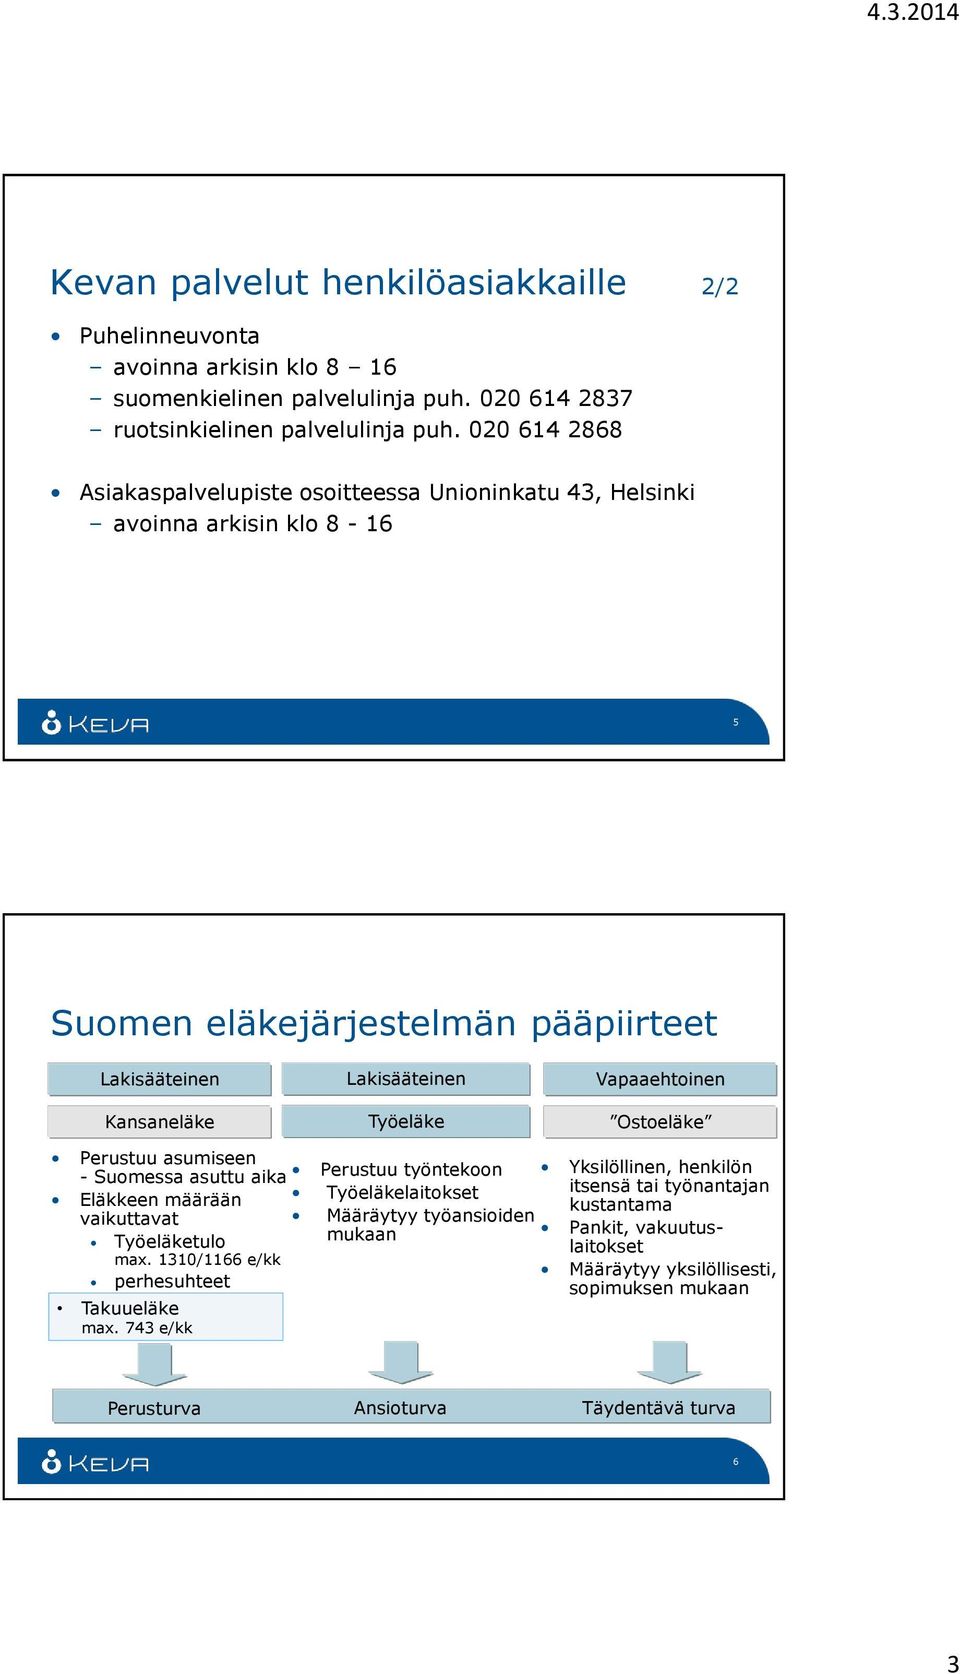 Kansaneläke Työeläke Ostoeläke Perustuu asumiseen - Suomessa asuttu aika Eläkkeen määrään vaikuttavat Työeläketulo max. 1310/1166 e/kk perhesuhteet Takuueläke max.